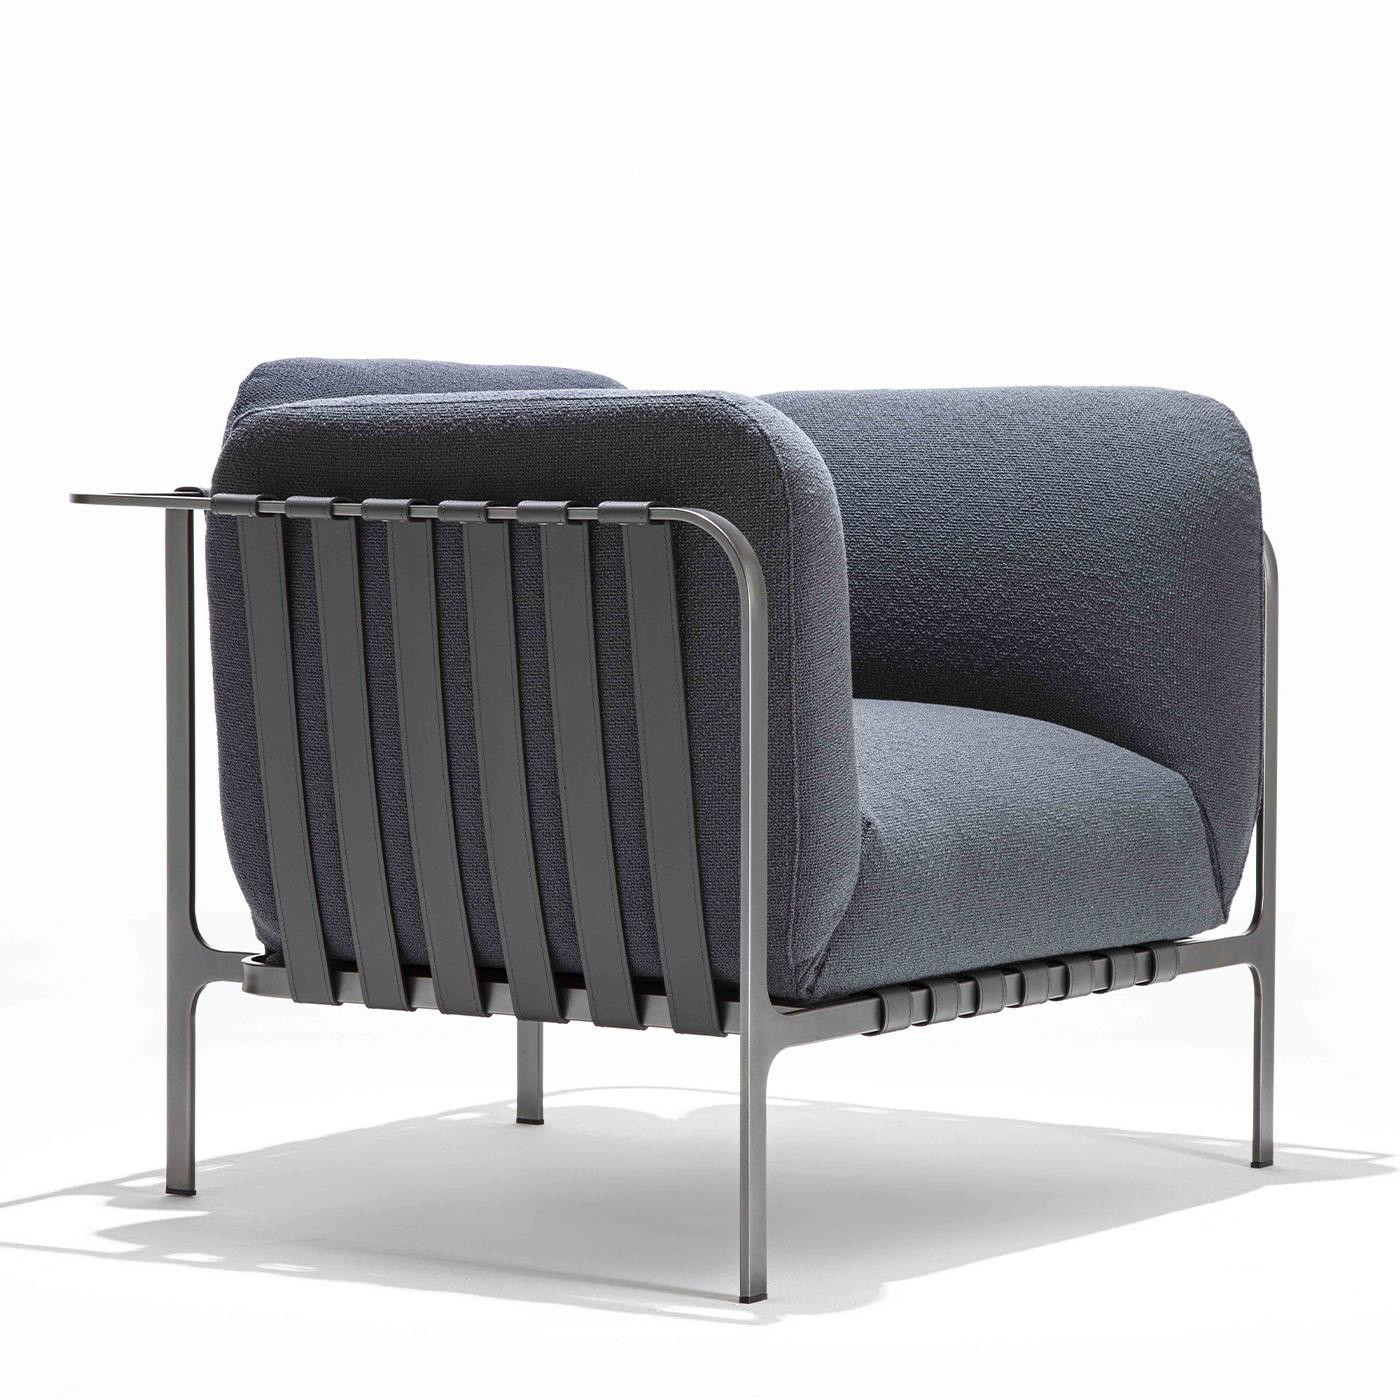 Faisant partie de la collection contemporaine de Sydney, ce fauteuil dégage une élégance moderne et extrêmement raffinée. Marqué par un attrait dynamique, l'assise, le dossier et les coussins d'accoudoirs généreusement rembourrés sont enfermés dans